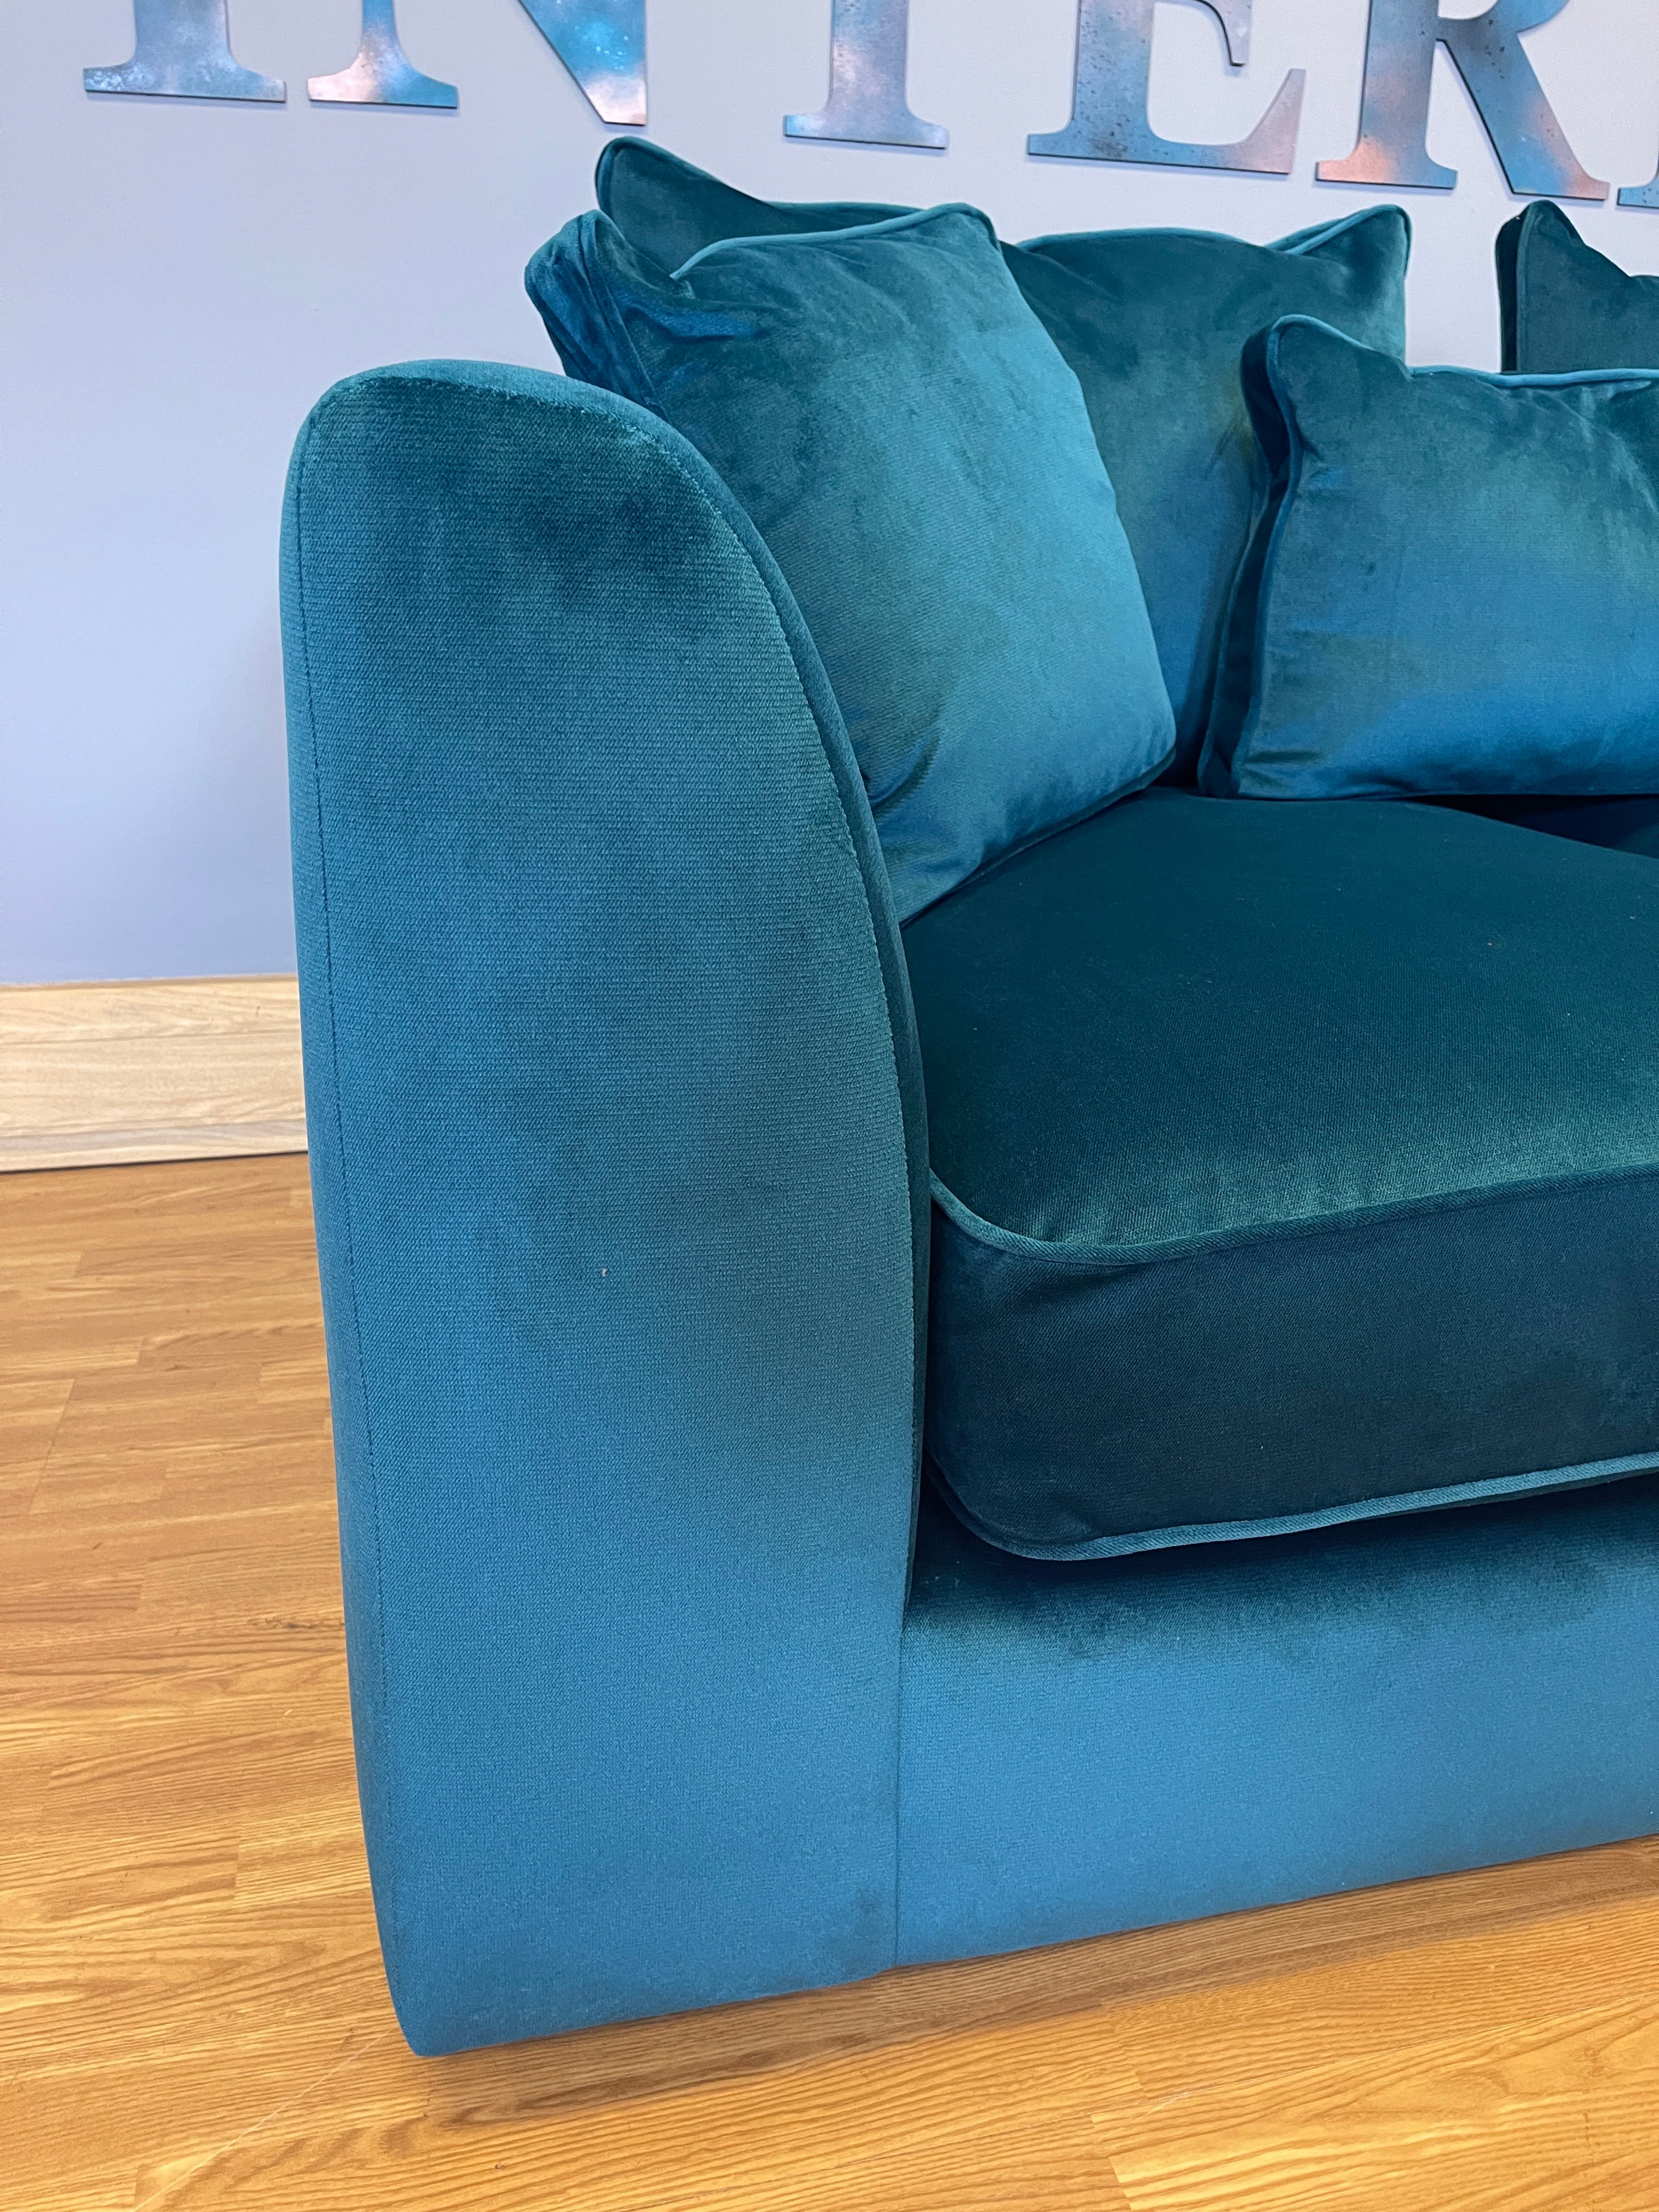 BOSSANOVA medium 2 seater cushion back sofa in lumino teal velvet